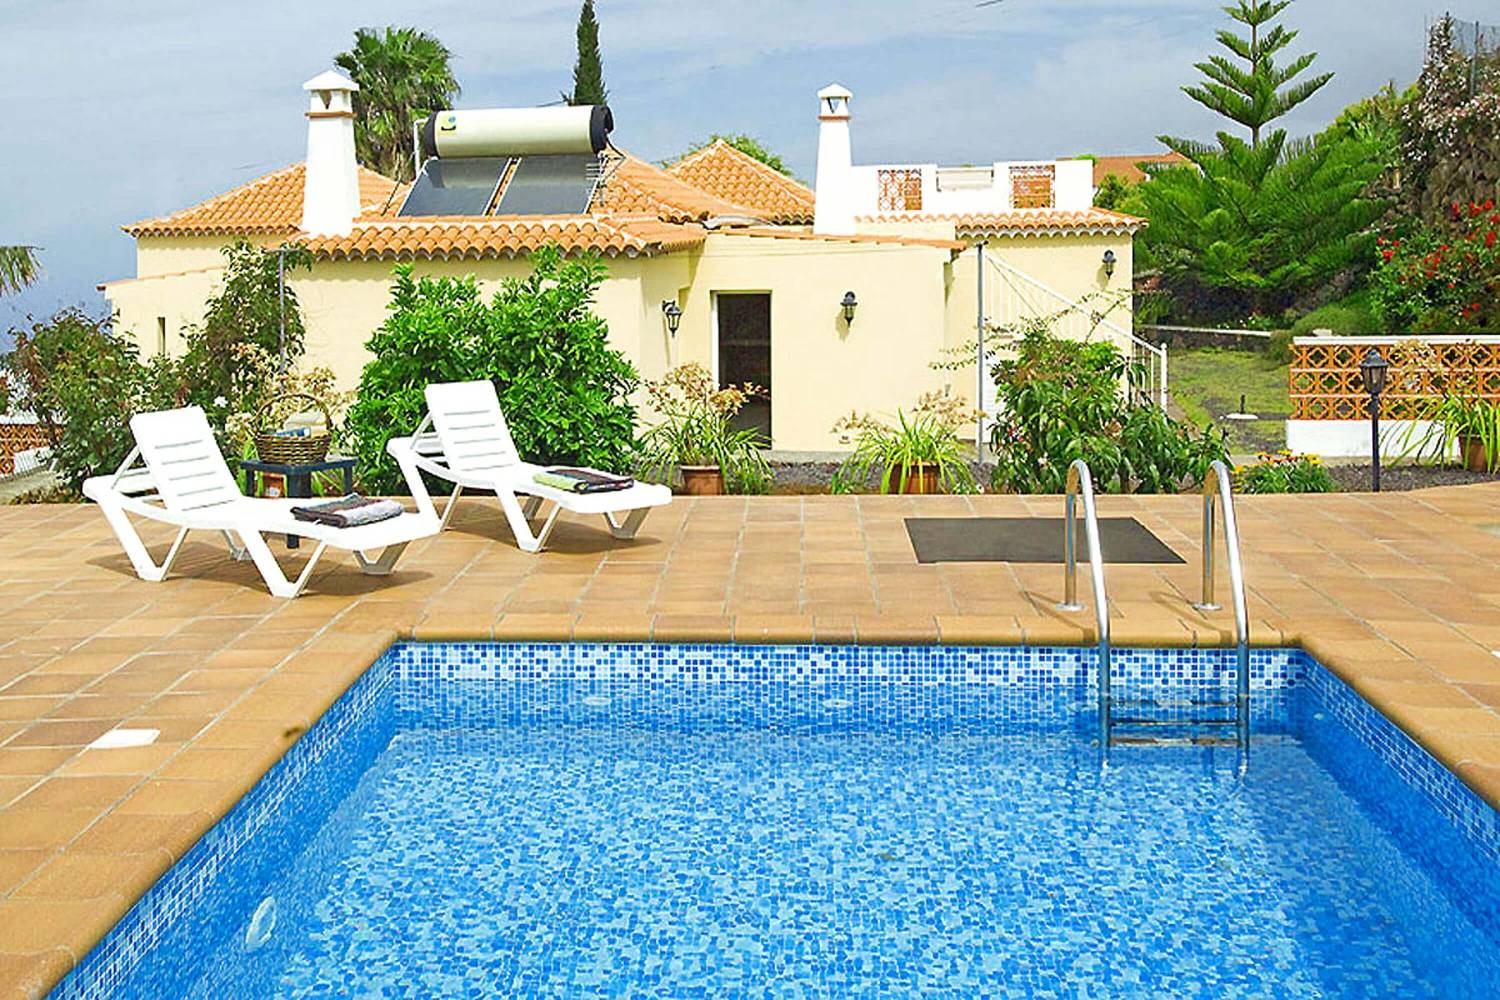 Casa vacanze con magnifica terrazza con piscina privata e sedie a sdraio, perfetta per qualche giorno di relax nella zona di Tijarafe